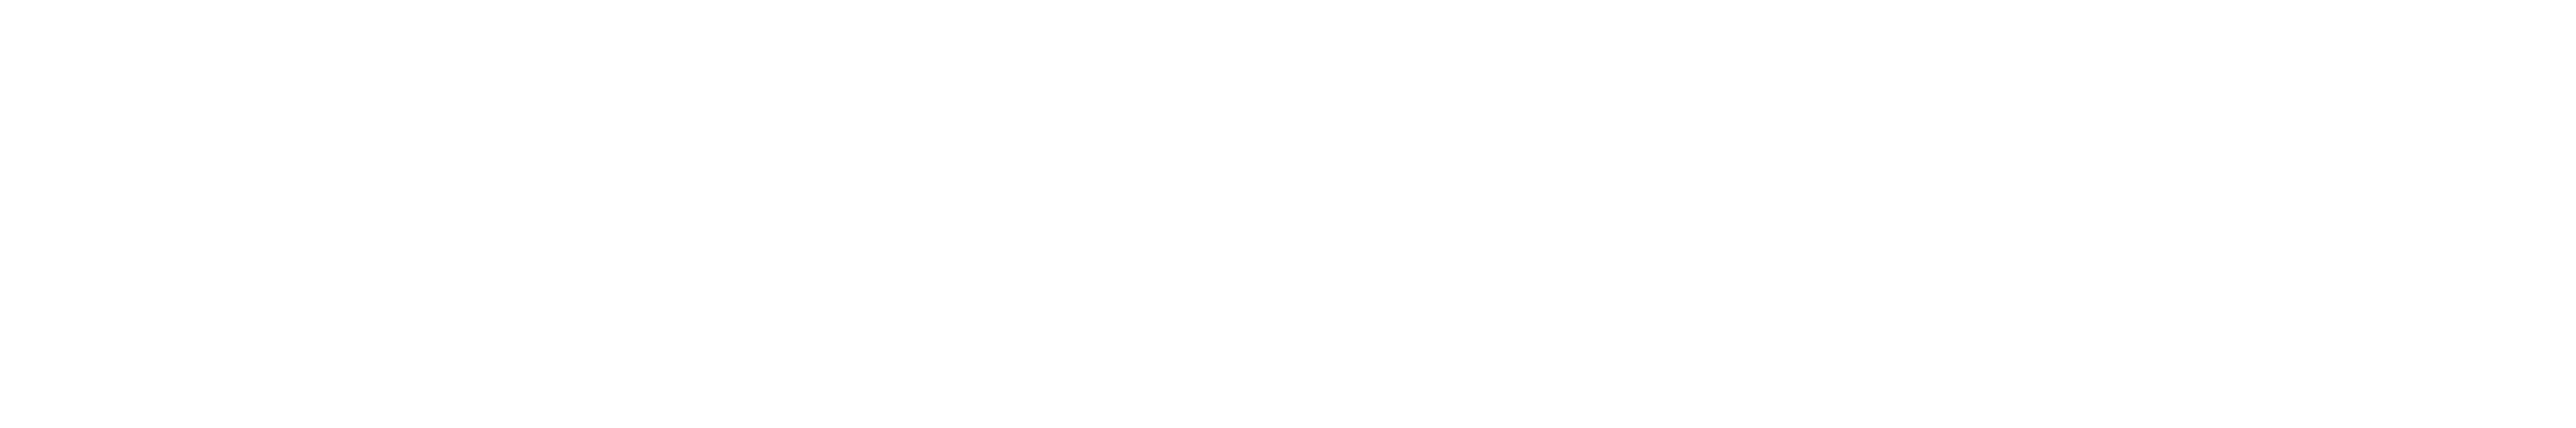 Pachuvum Athbhuthavilakkum logo